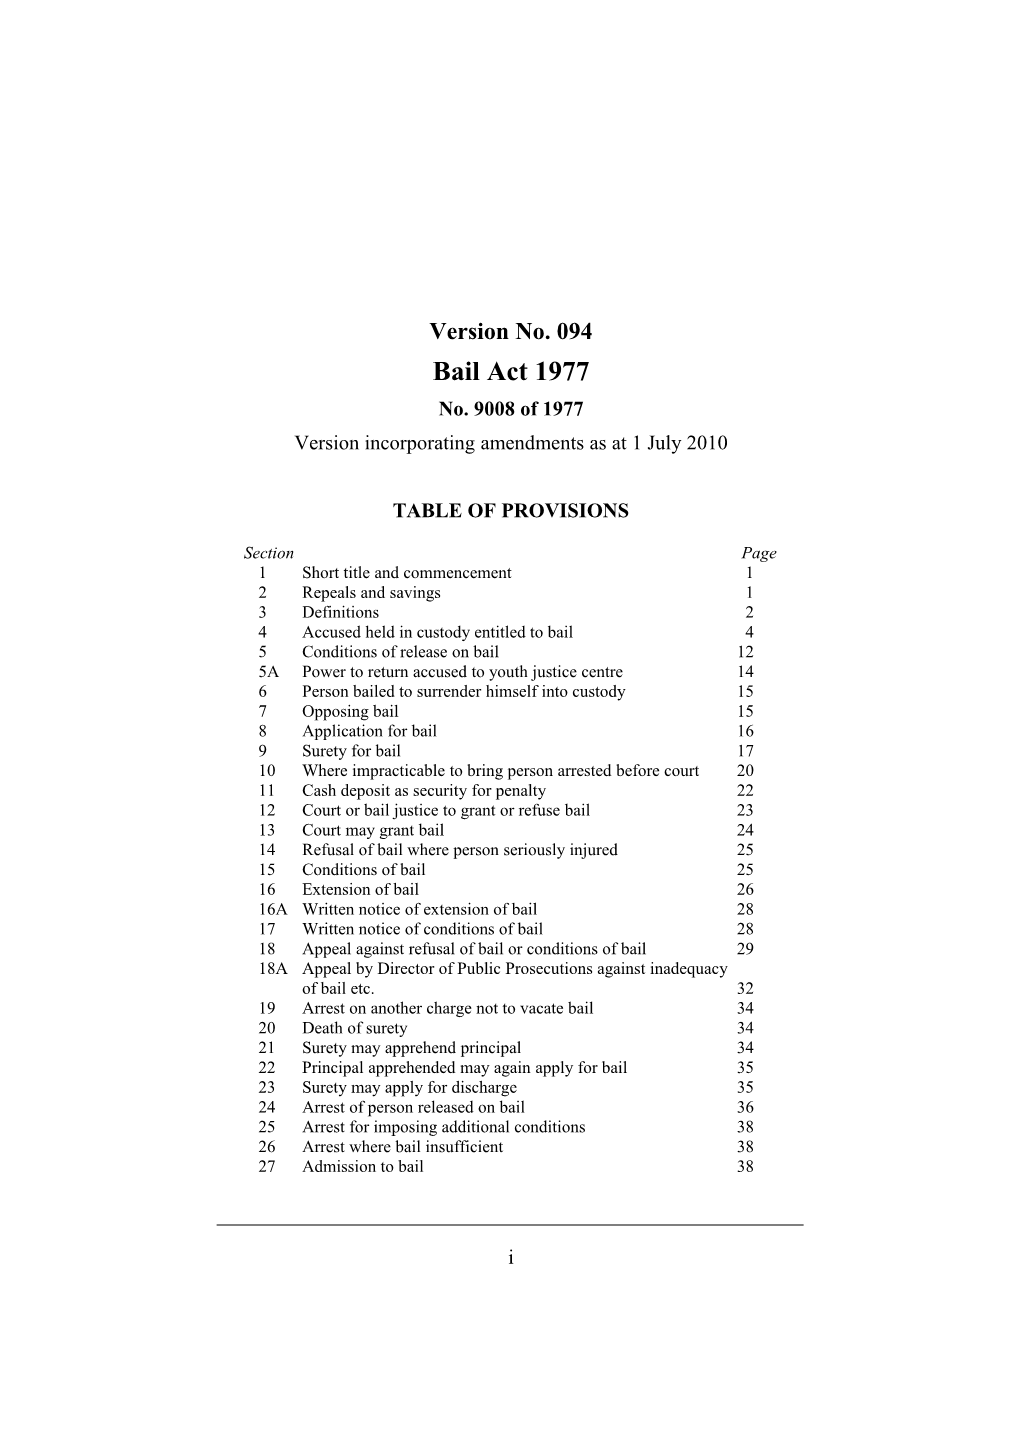 Version Incorporating Amendments As at 1 July 2010